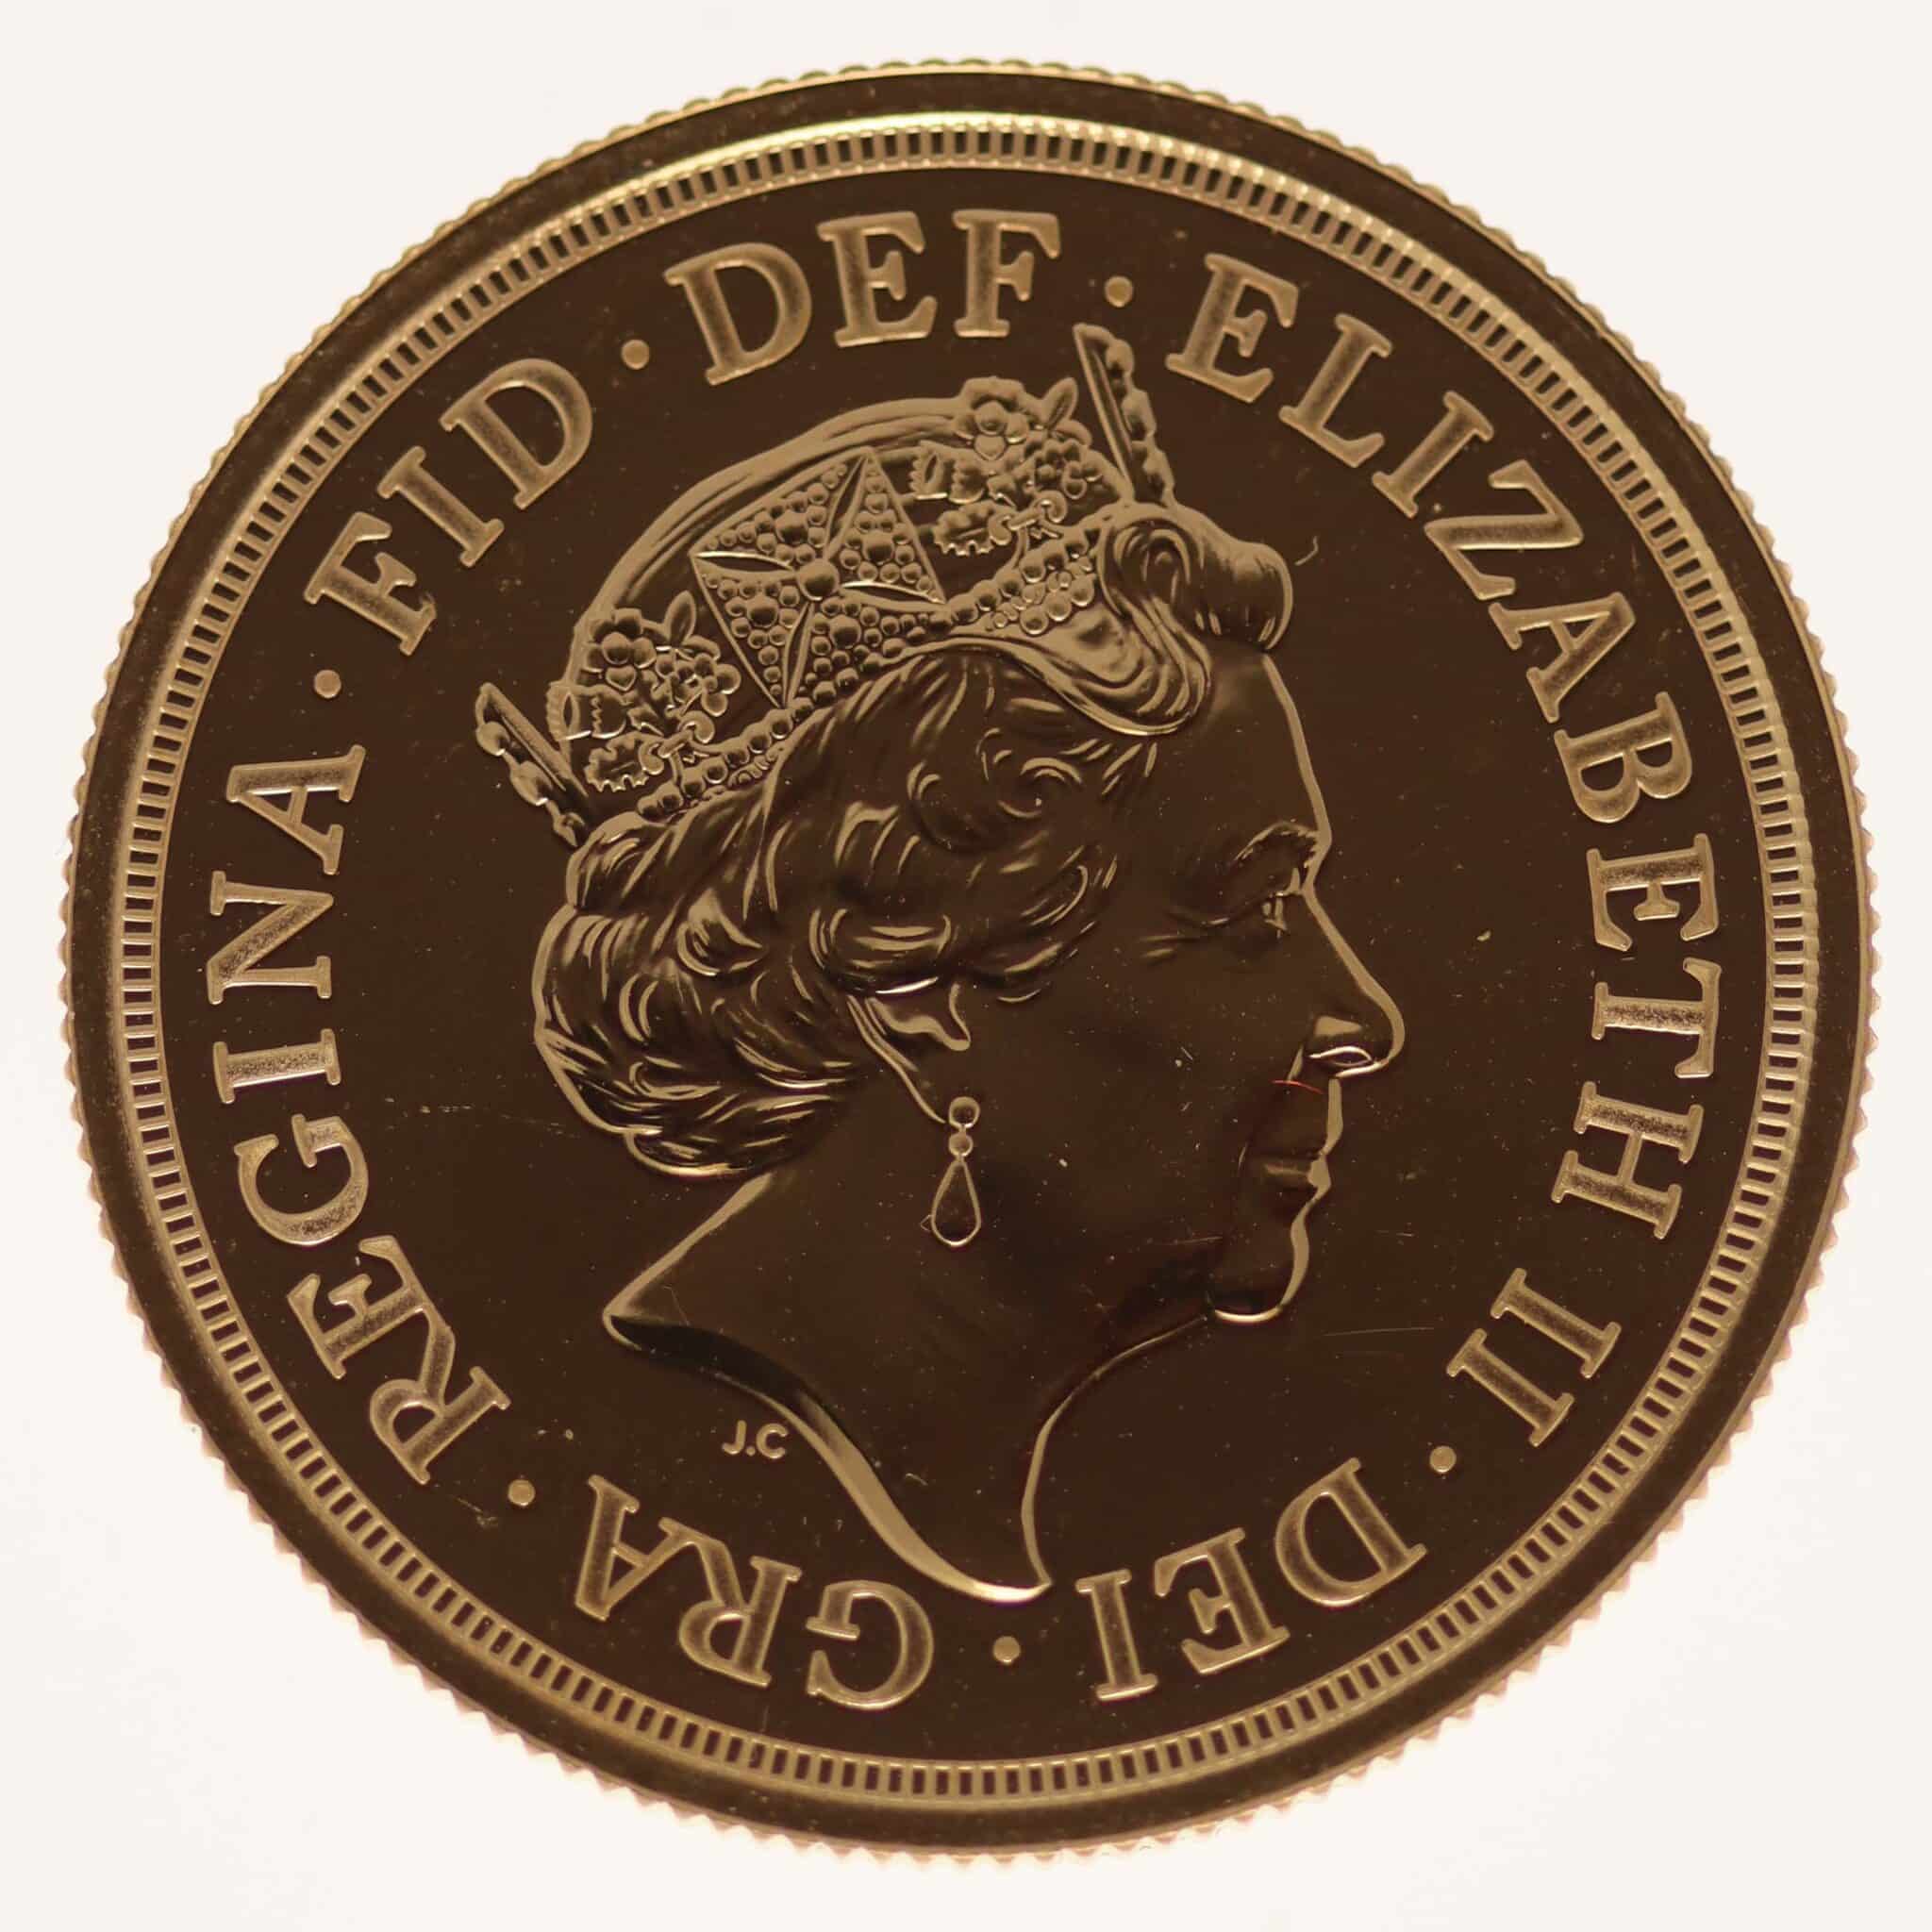 grossbritannien - Großbritannien Elisabeth II. 2 Pounds 2020